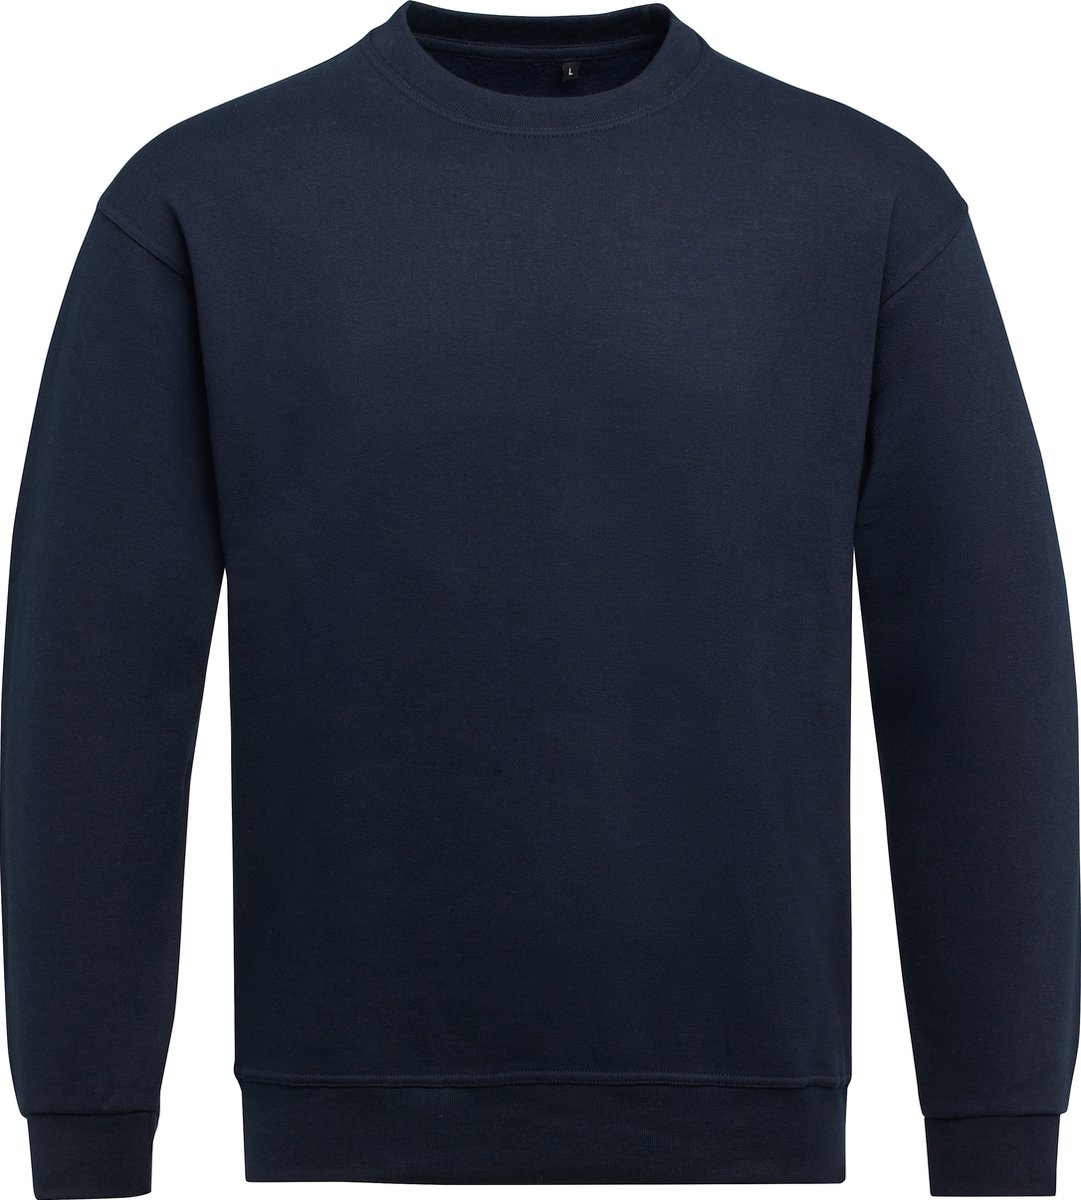 Donker Blauwe unisex sweater merk SG Essential maat L